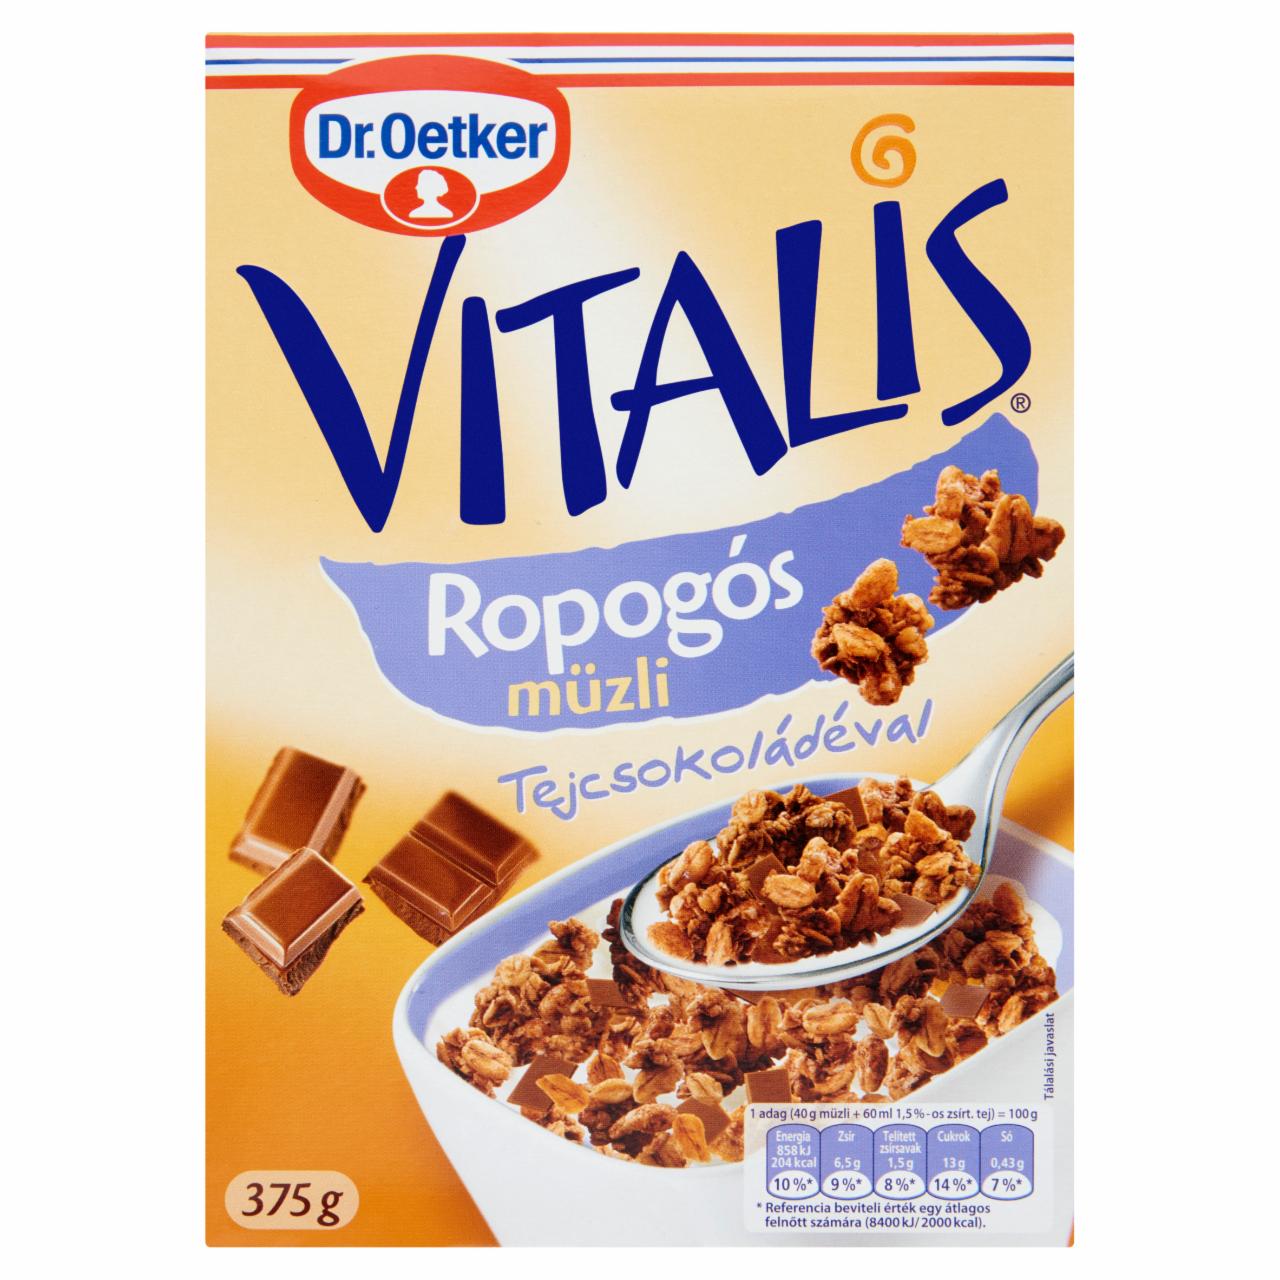 Képek - Dr. Oetker Vitalis Ropogós müzli tejcsokoládéval 375 g